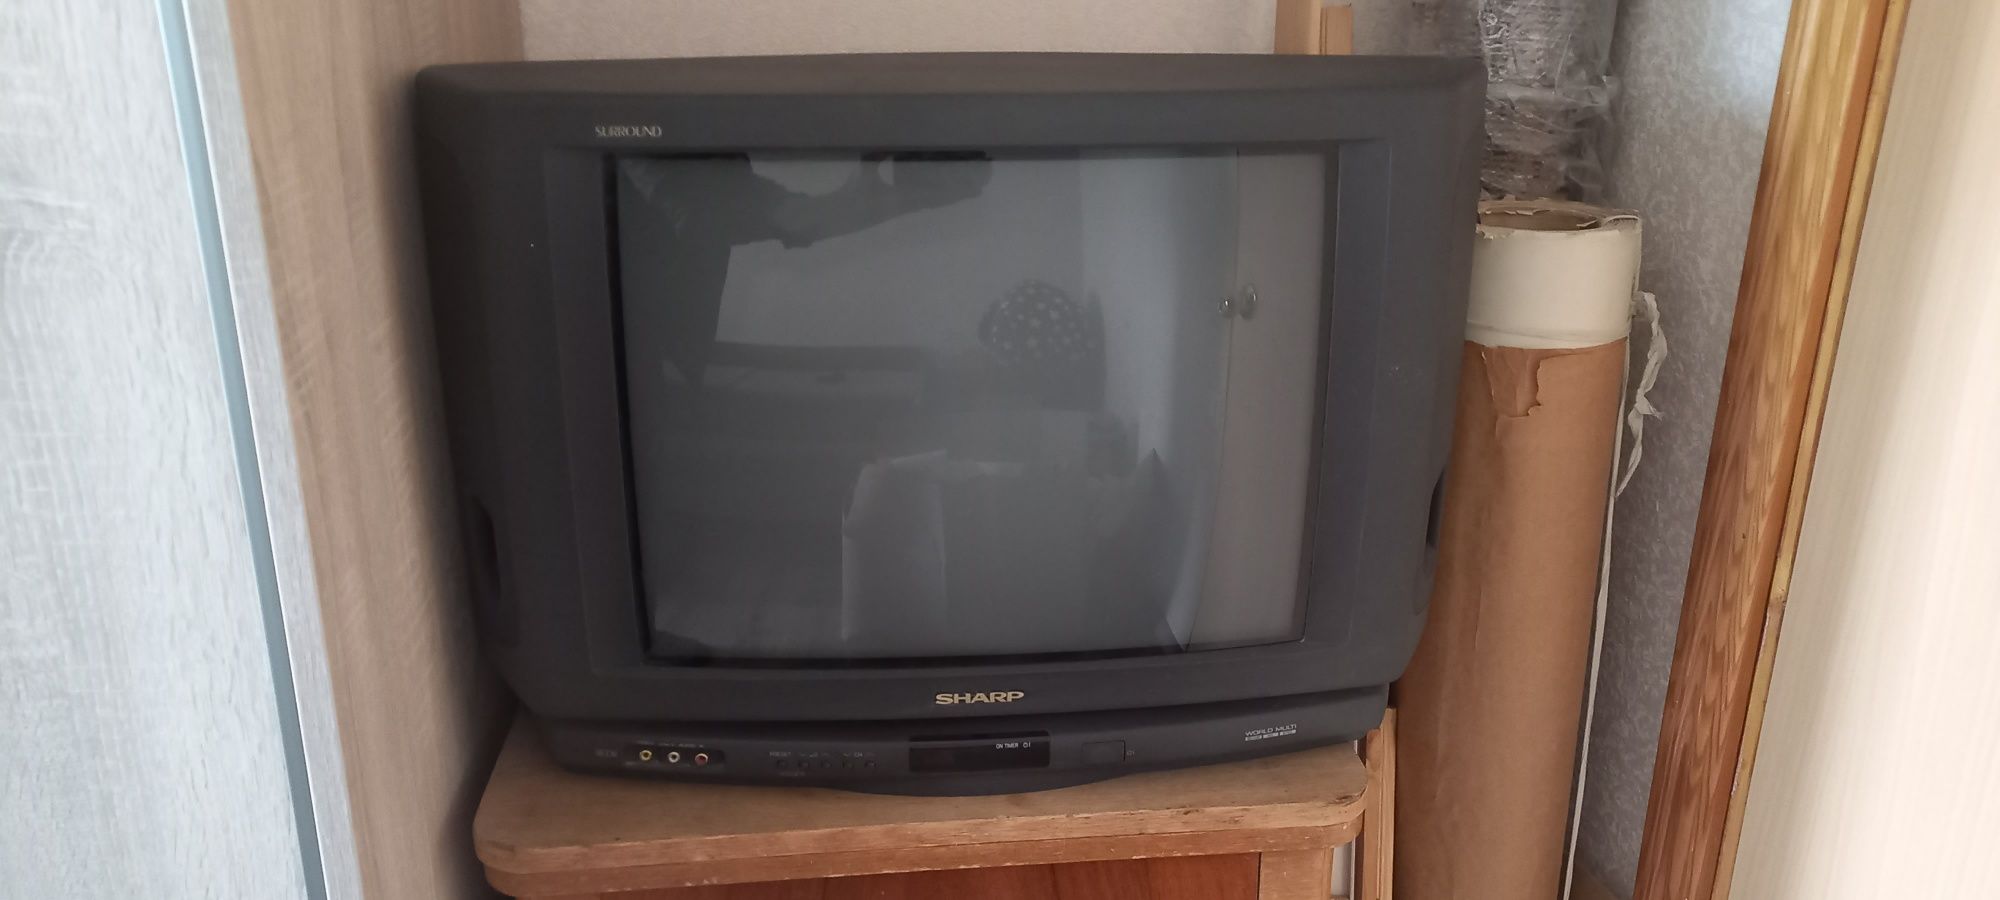 Кинескопный телевизор Sharp Surround